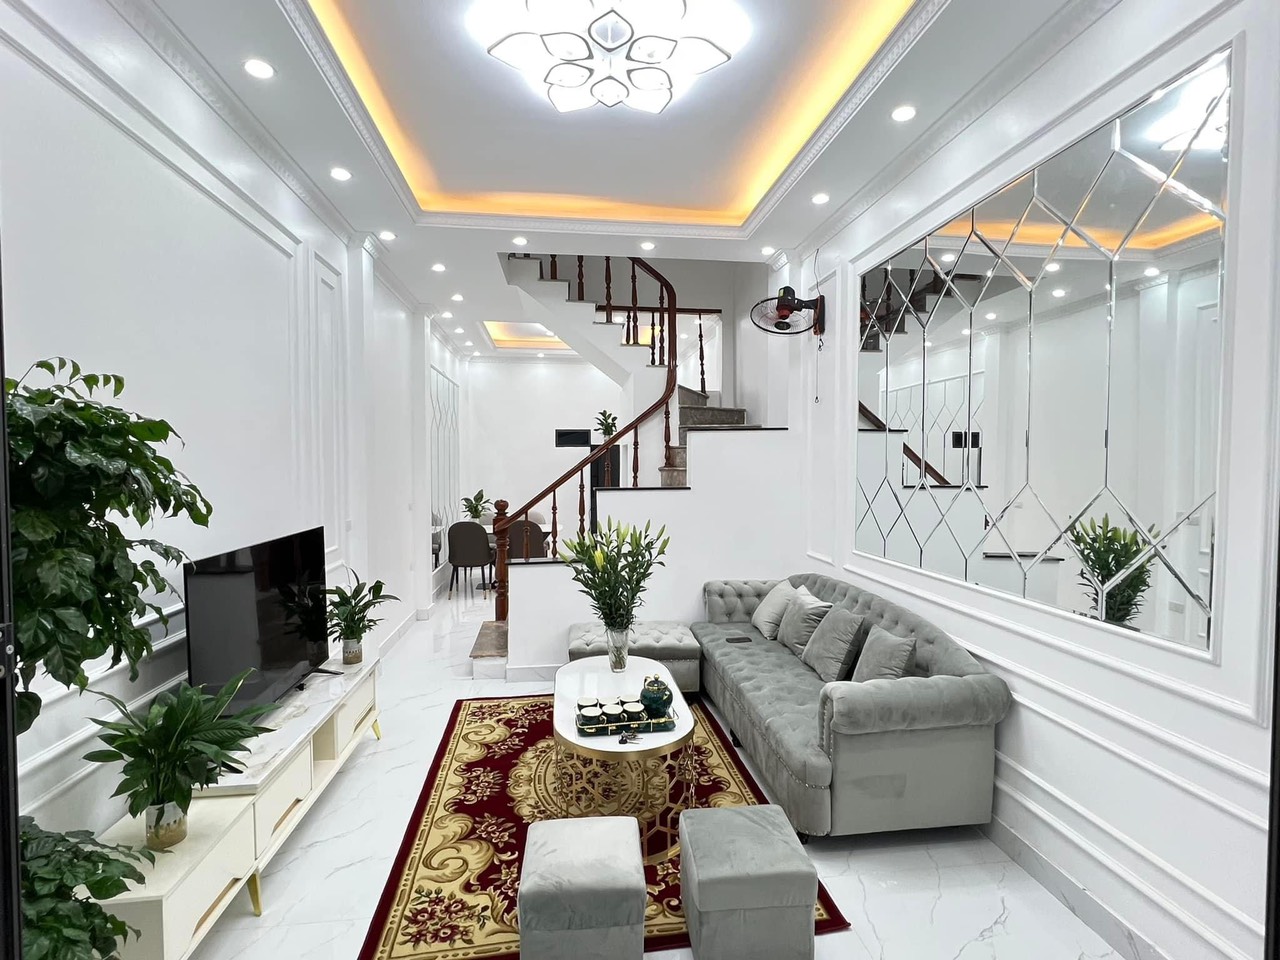 Bán nhà mới đẹp như tranh vẽ, nội thất đẹp rộng rãi khu vực Trương Định mà chỉ hơn 3 tỷ